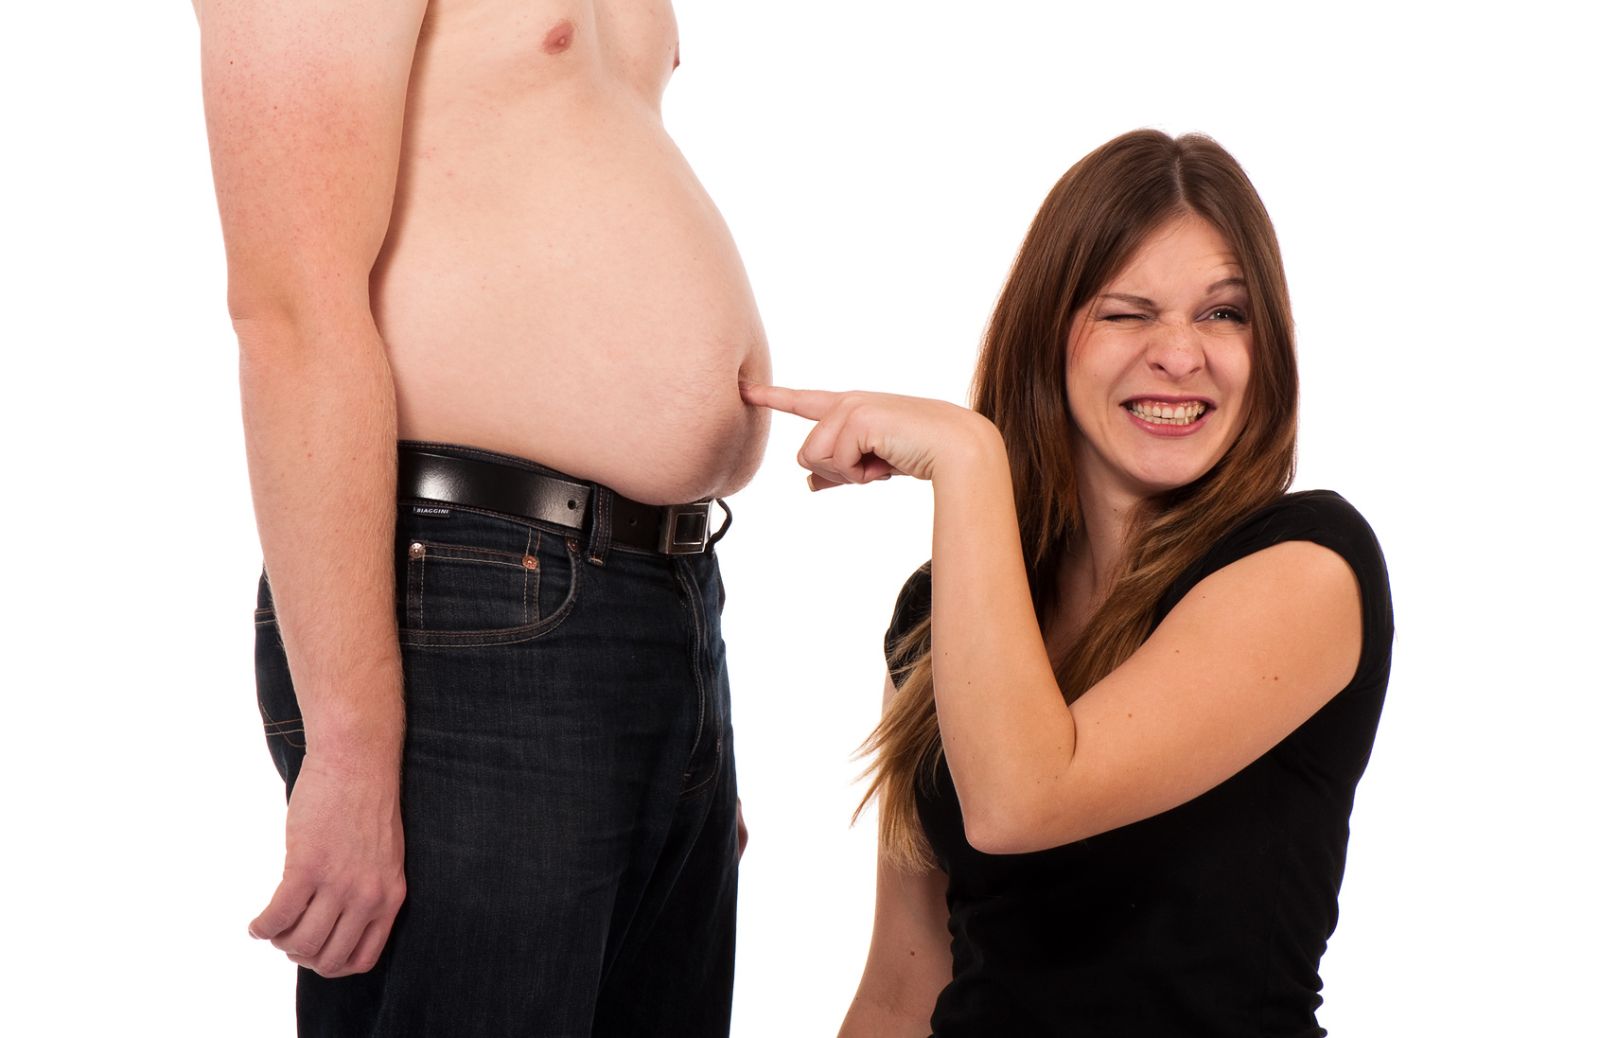 L'aumento di peso del partner può essere un alibi per tradirlo?